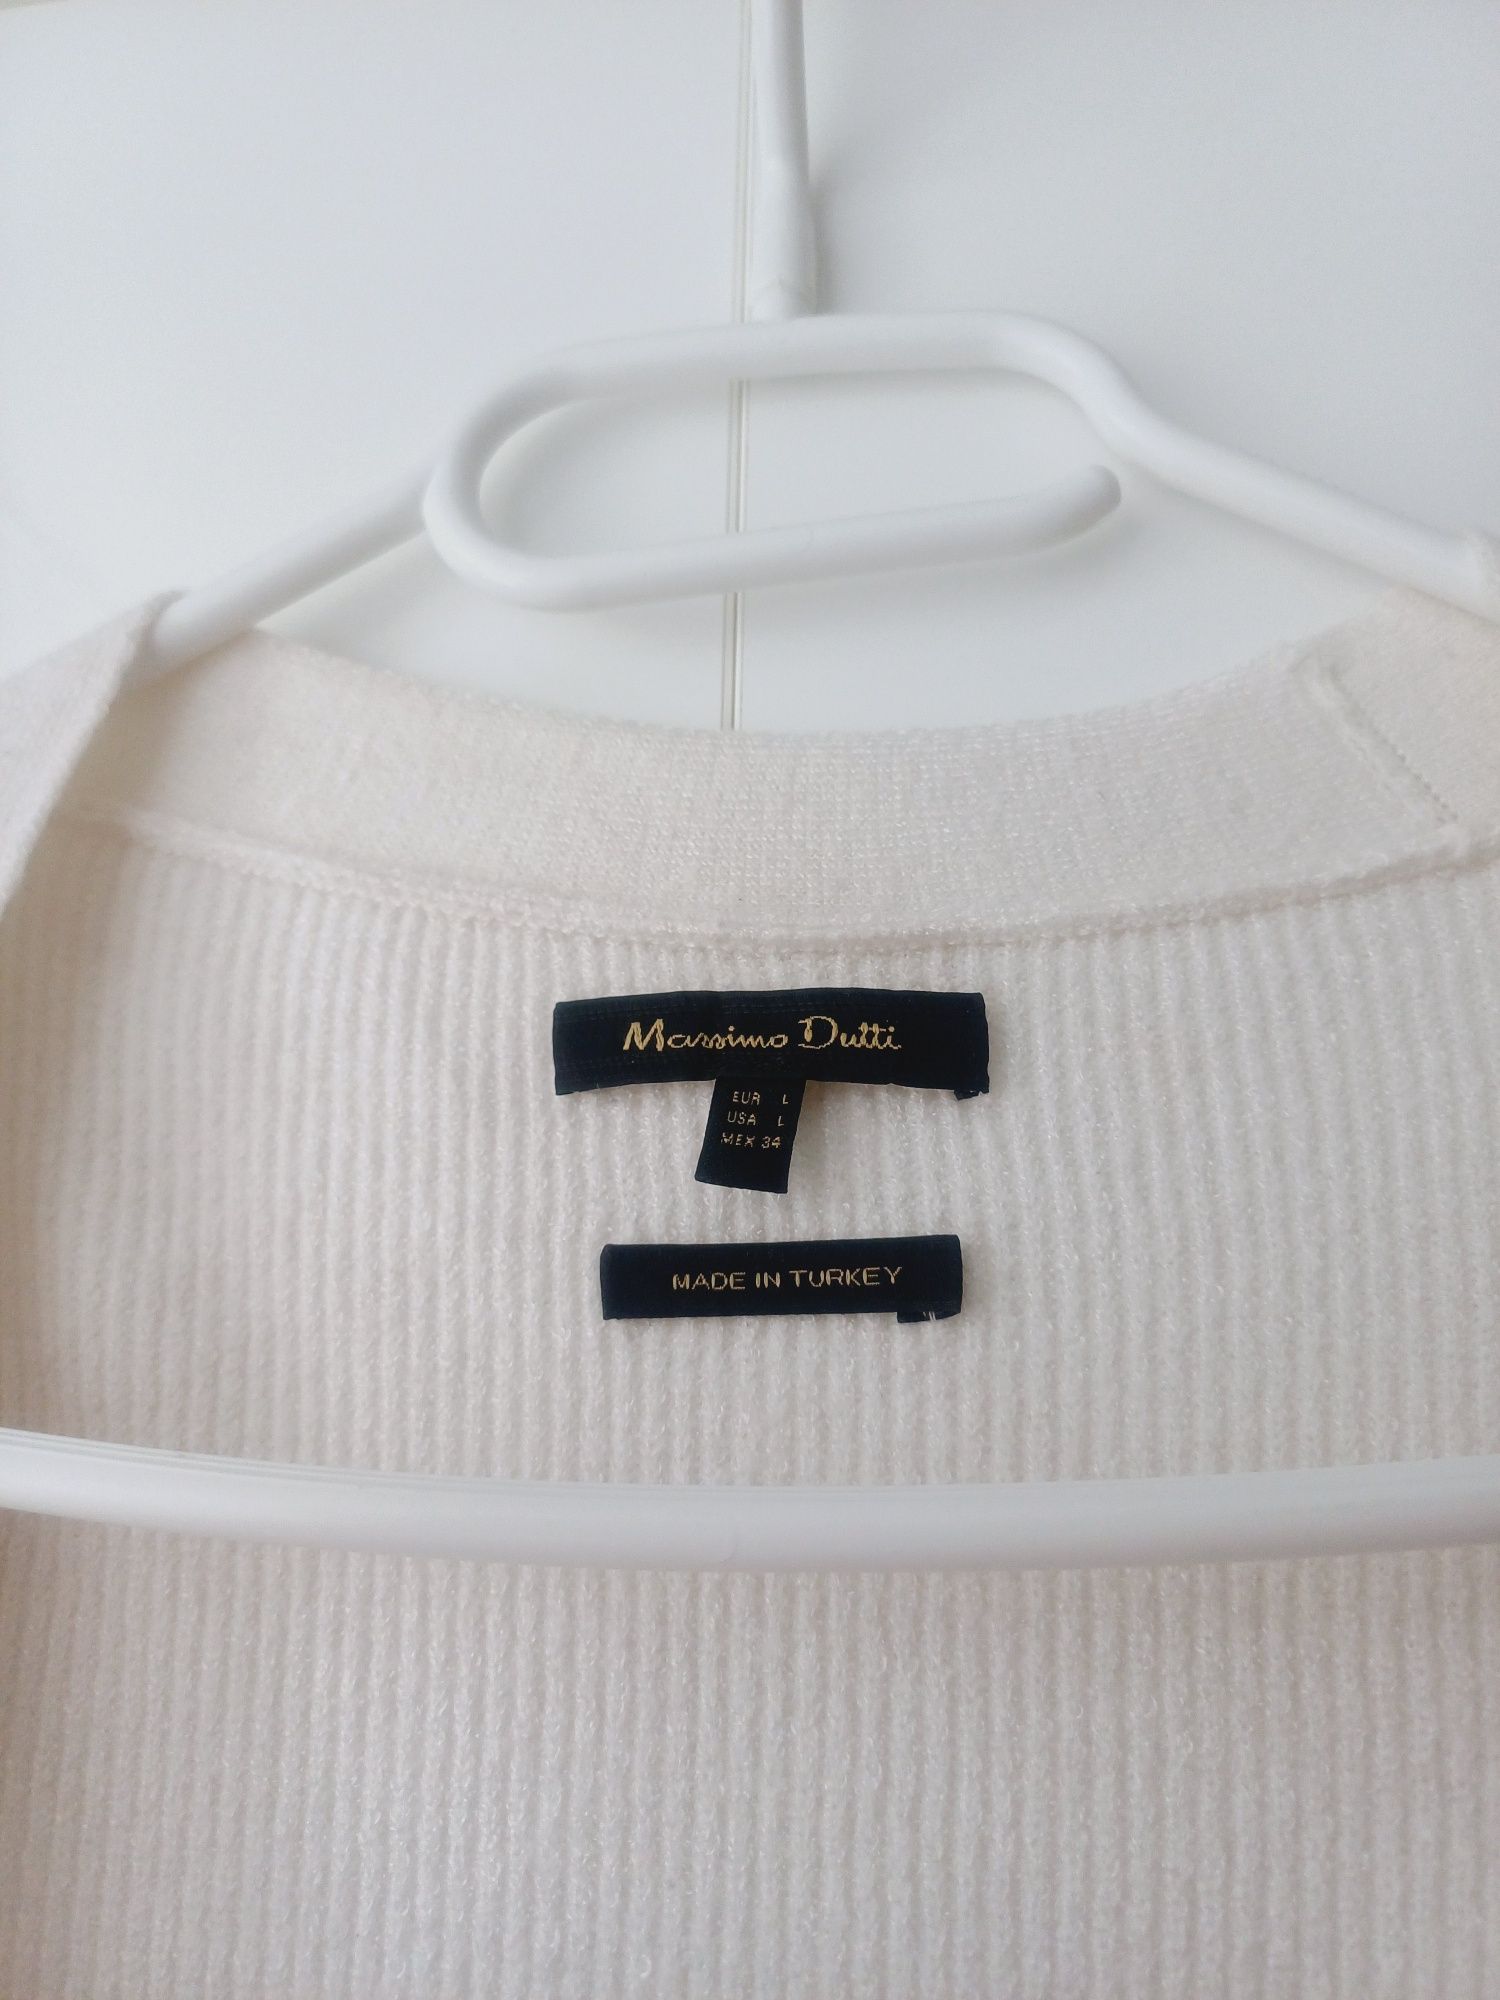 Massimo Dutti kardigan ecru kremowy biały sweter na guziki oversize